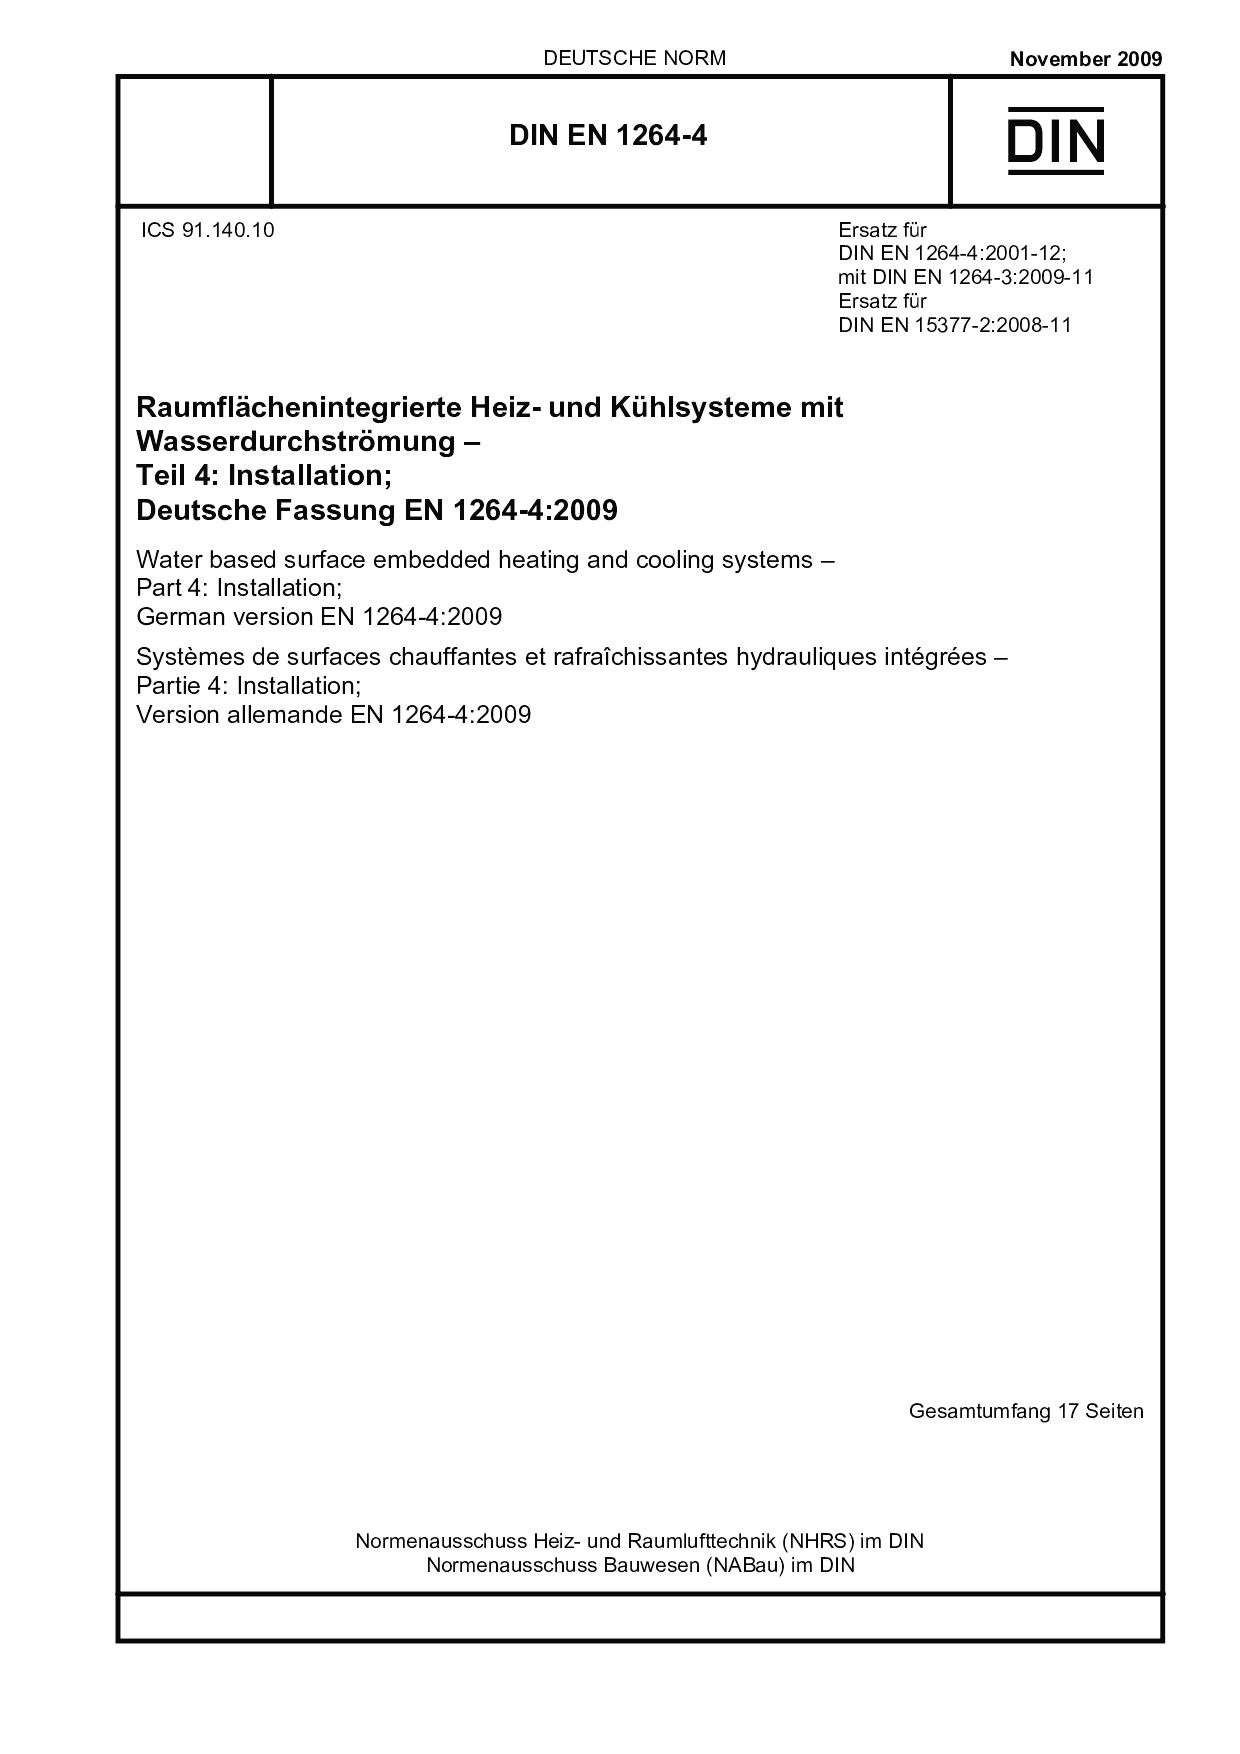 DIN EN 1264-4:2009封面图